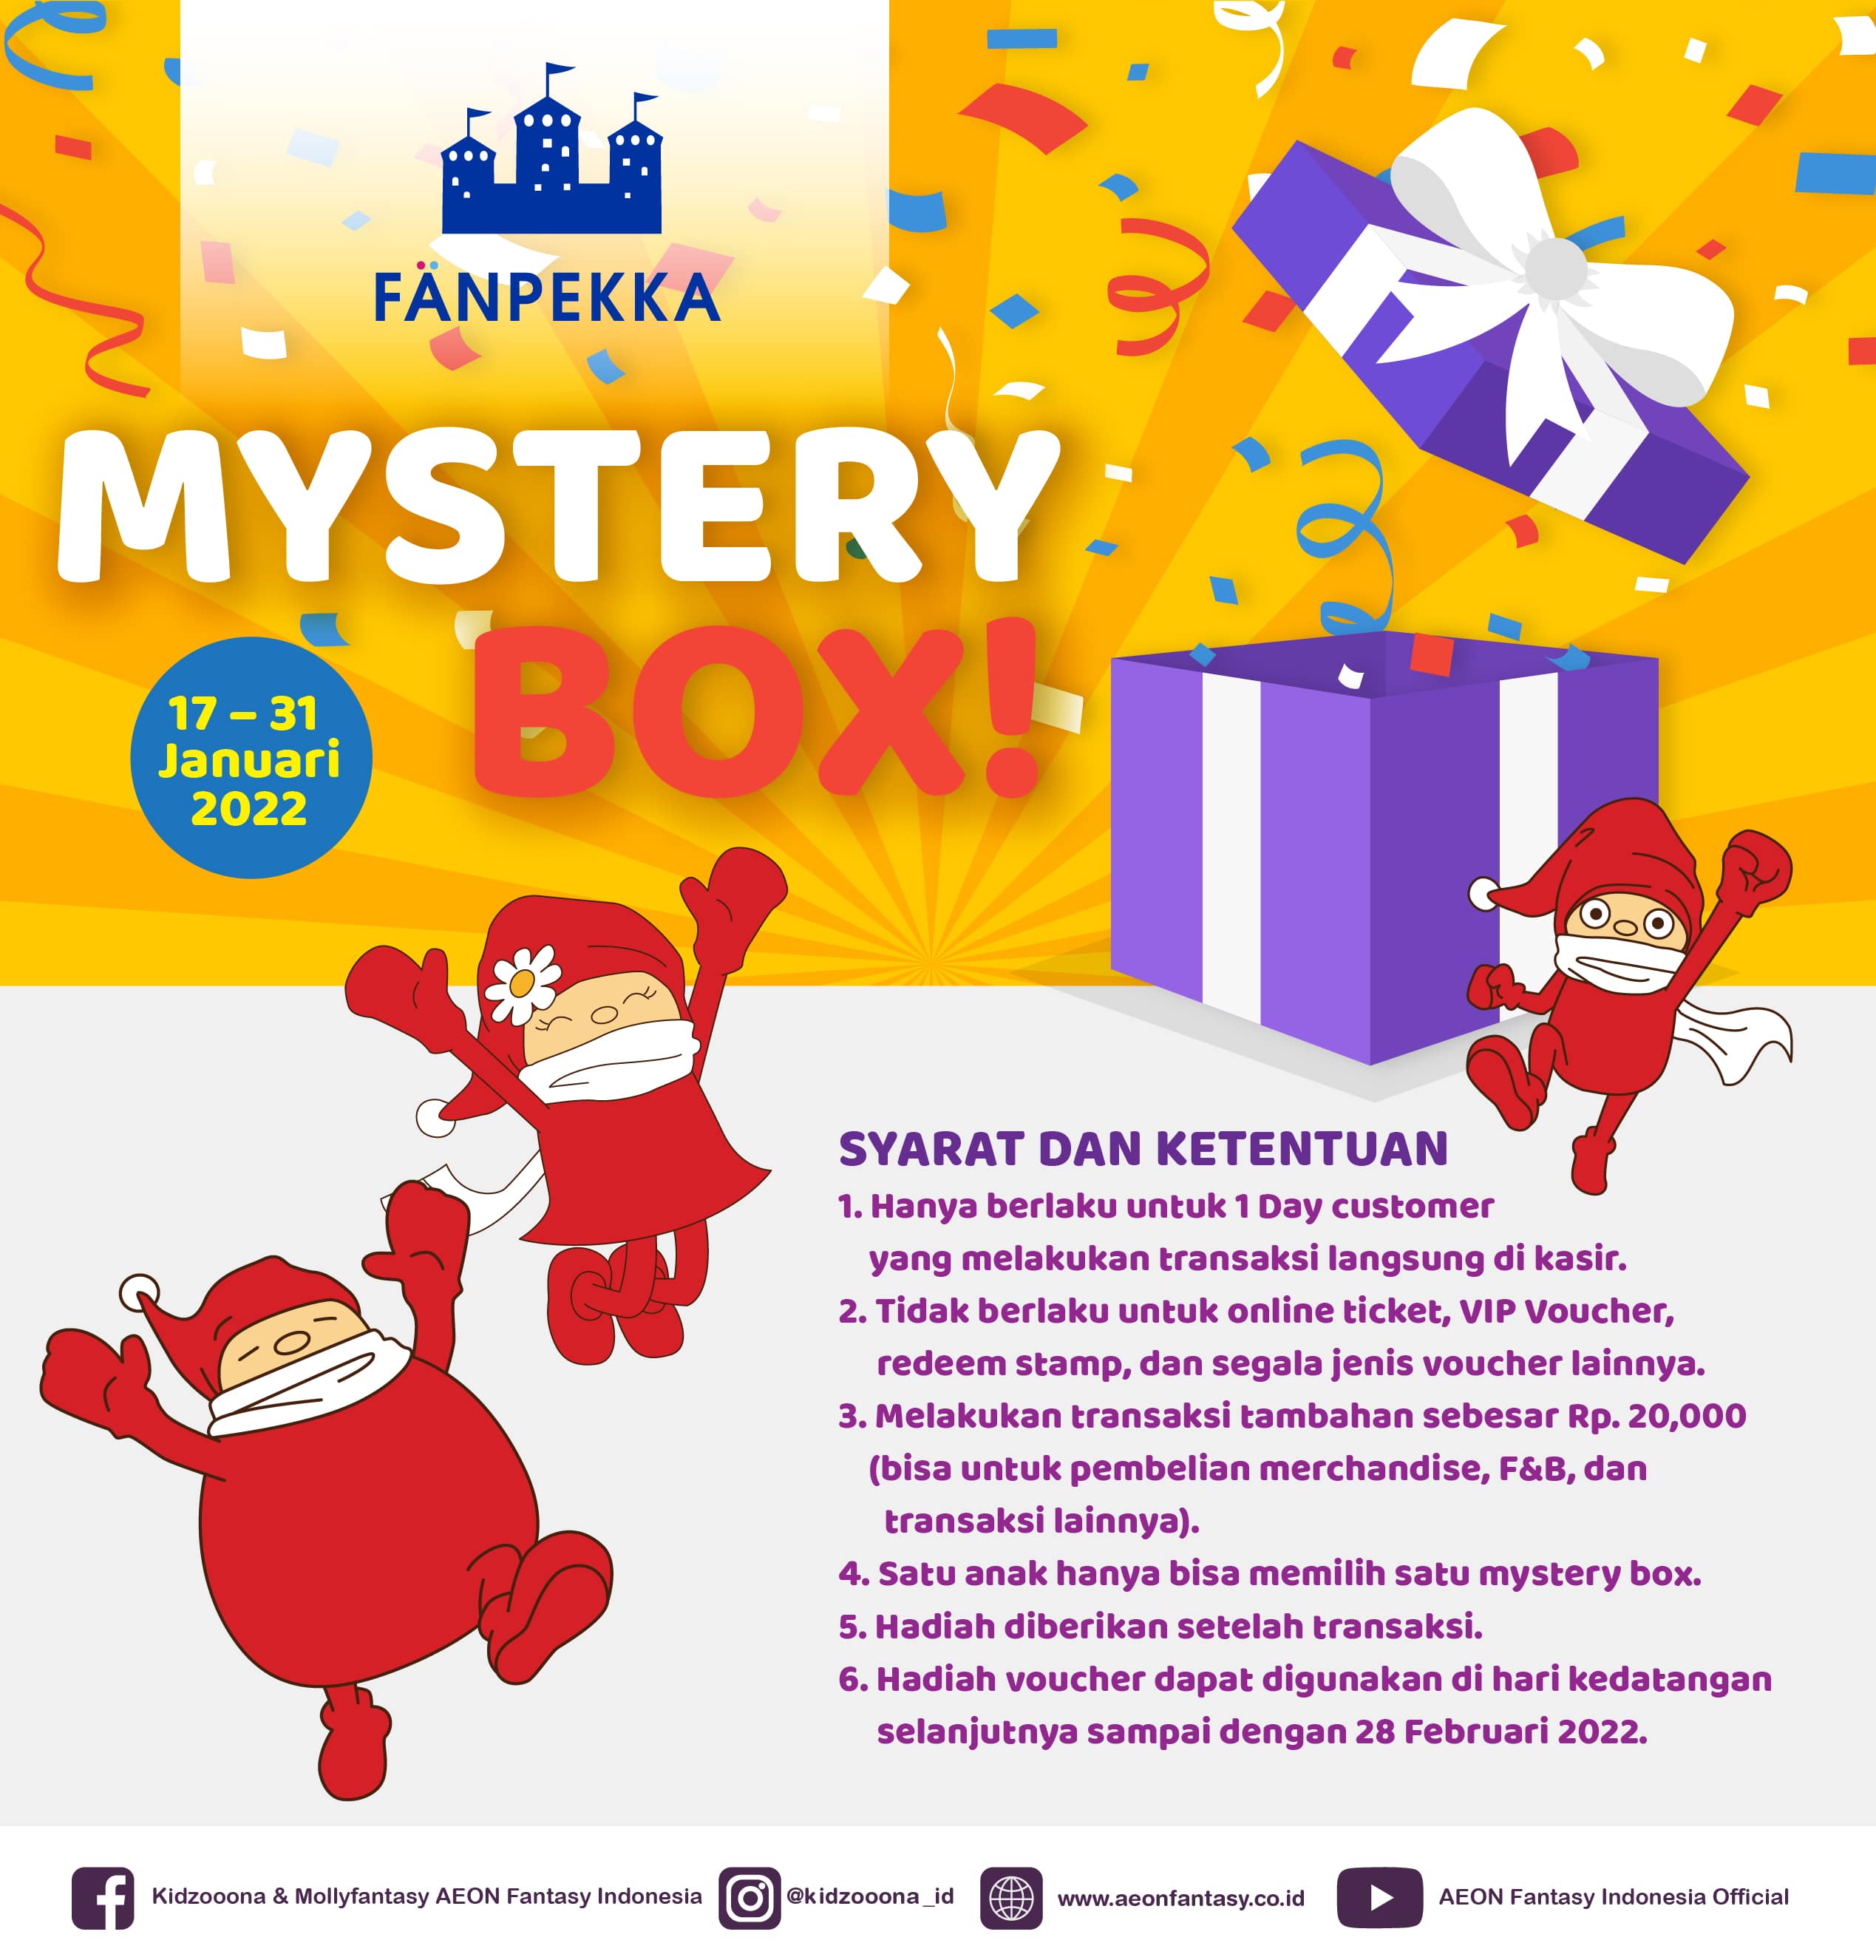 Mystery Box Fanpekkka